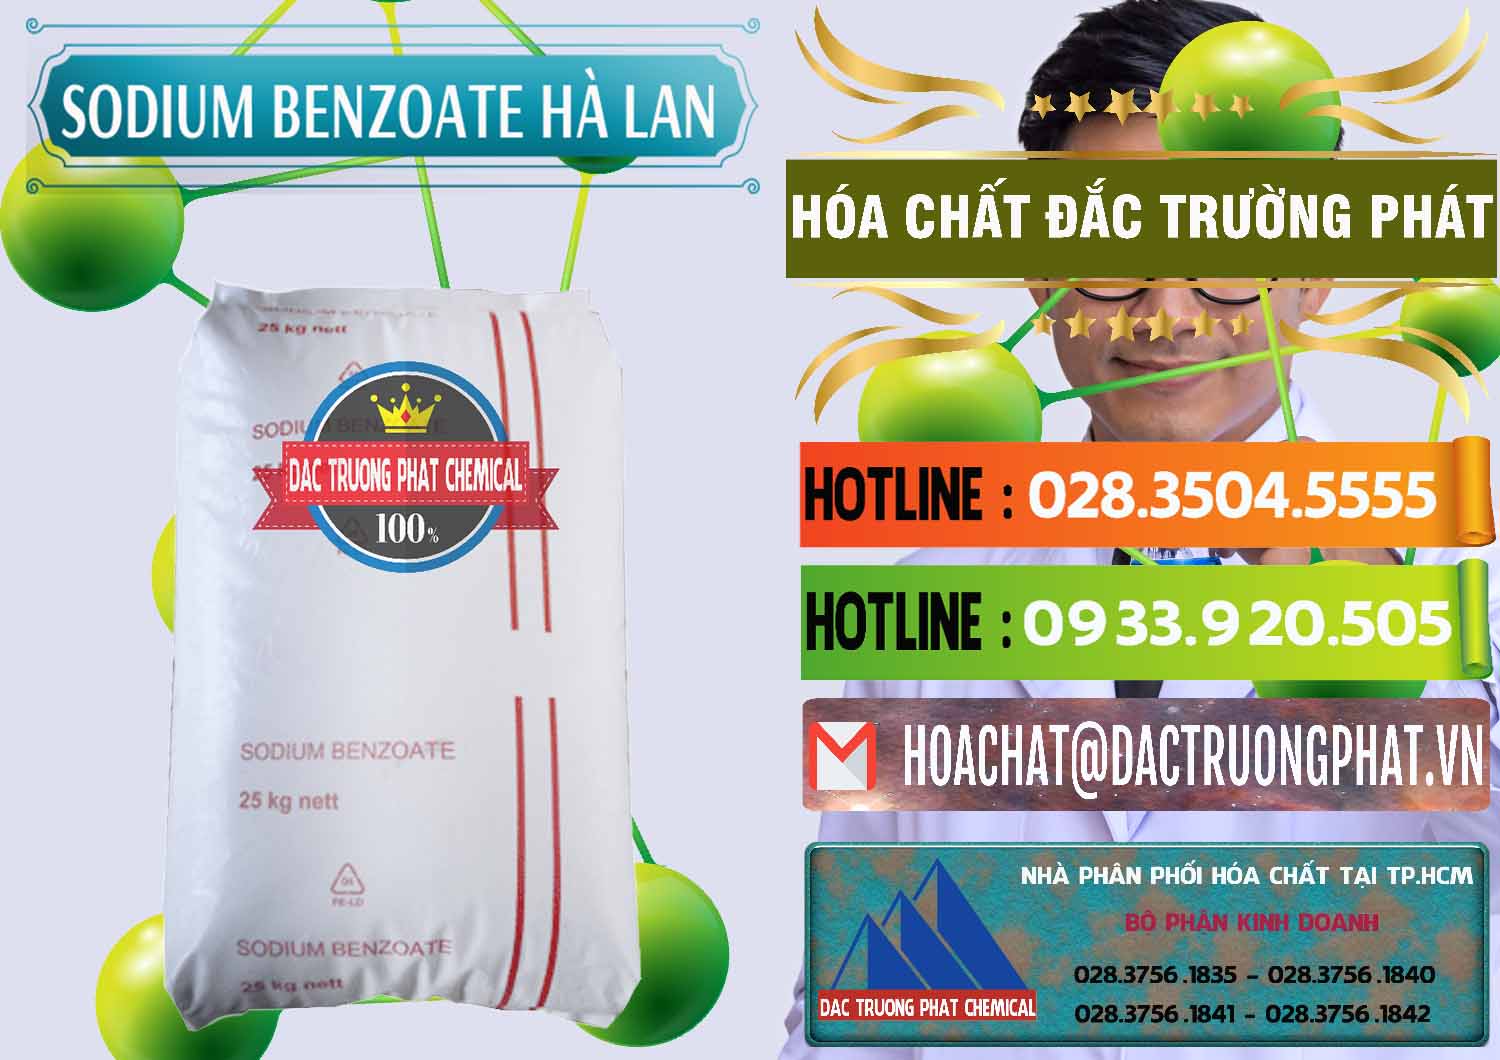 Cty chuyên cung ứng - bán Sodium Benzoate - Mốc Bột Chữ Cam Hà Lan Netherlands - 0360 - Đơn vị kinh doanh và phân phối hóa chất tại TP.HCM - cungcaphoachat.com.vn